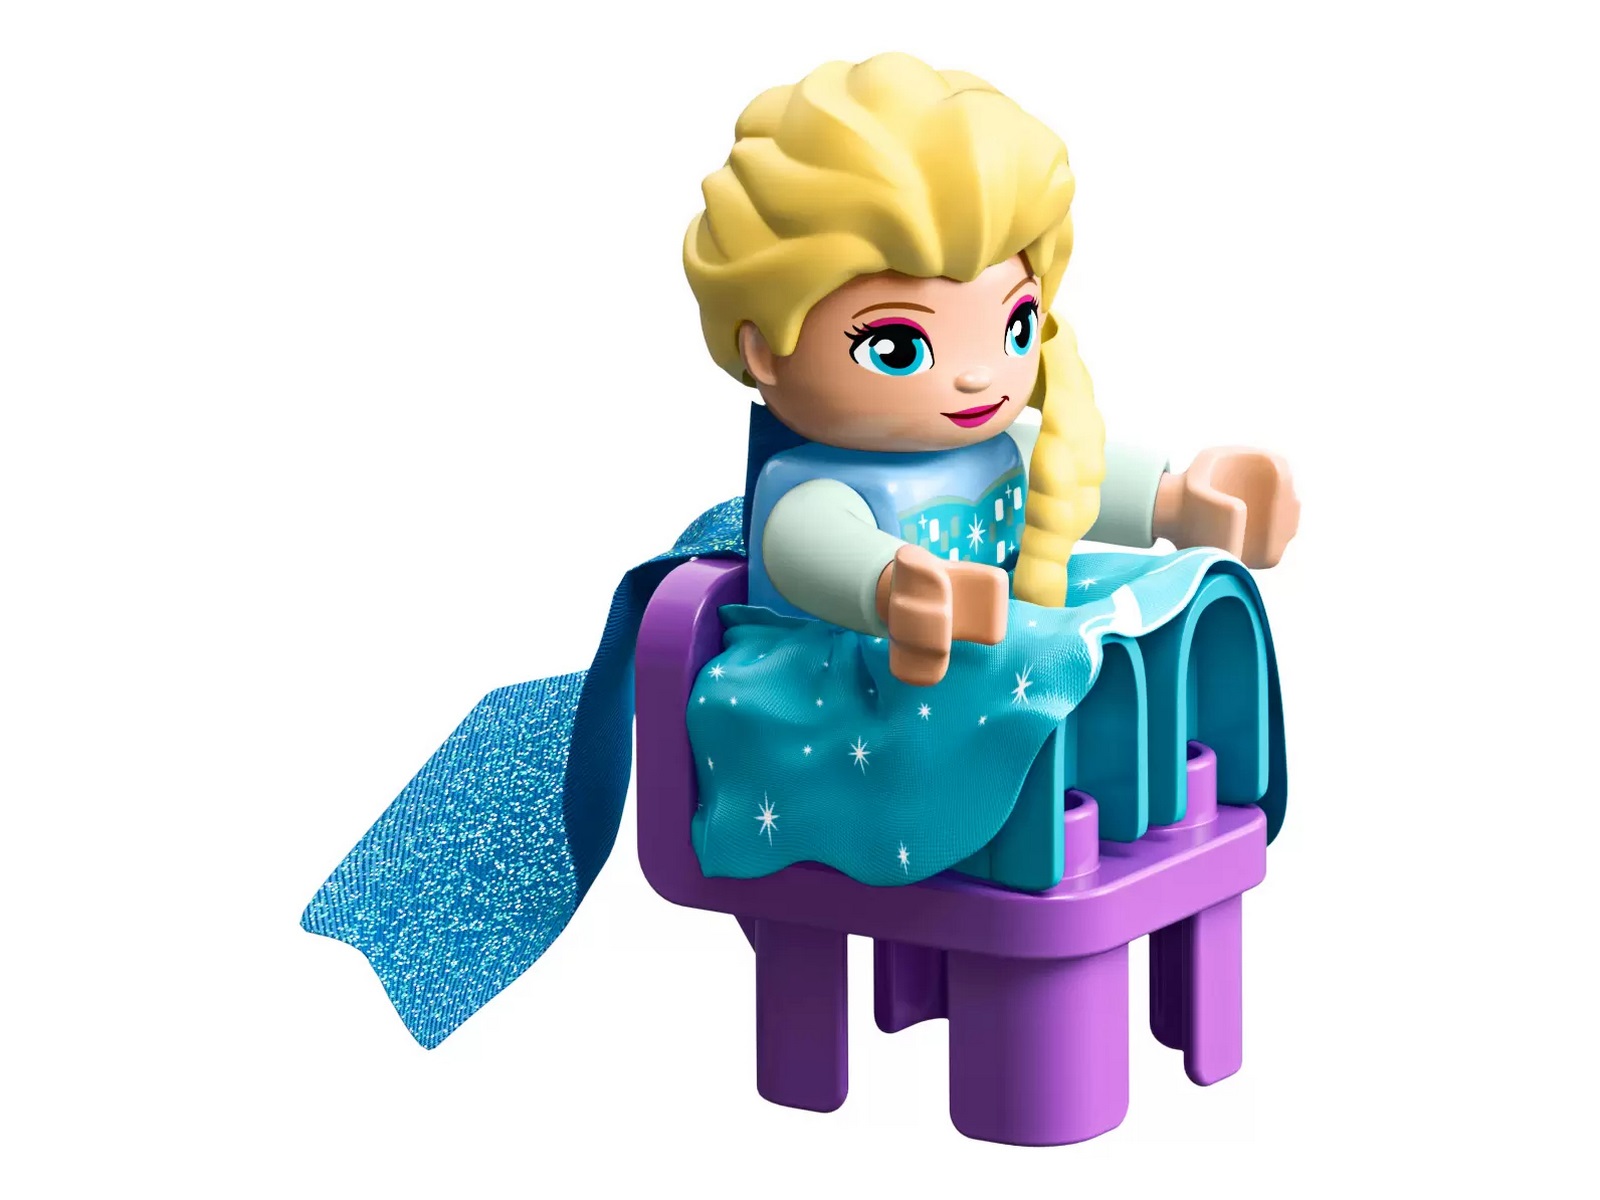 Конструктор LEGO Duplo Disney Princess «Ледяной замок» 10899 / 59 деталей